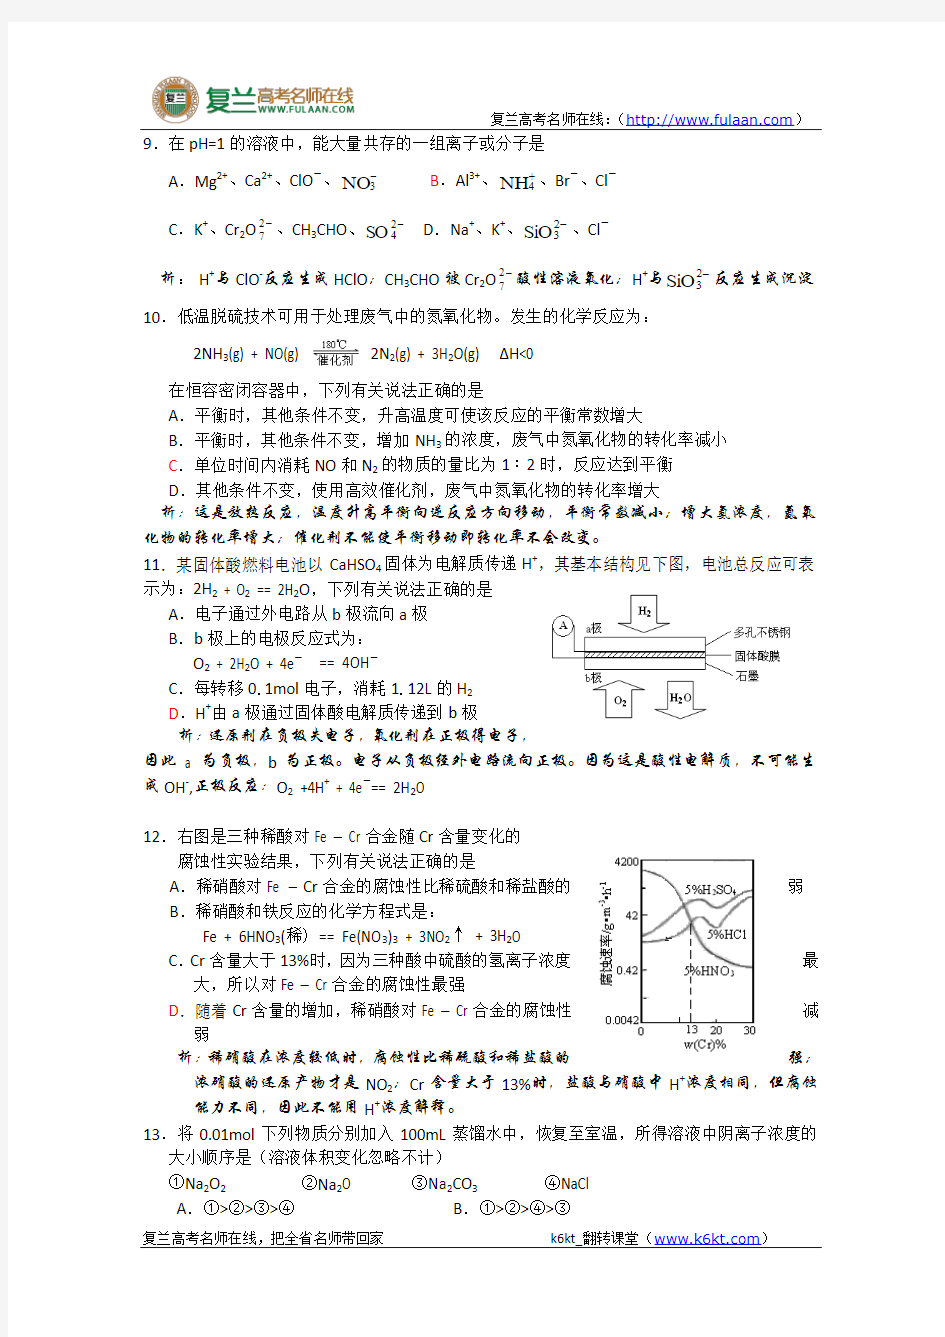 2010年高考试题——理综(安徽卷)-复兰高考名师在线精编解析版